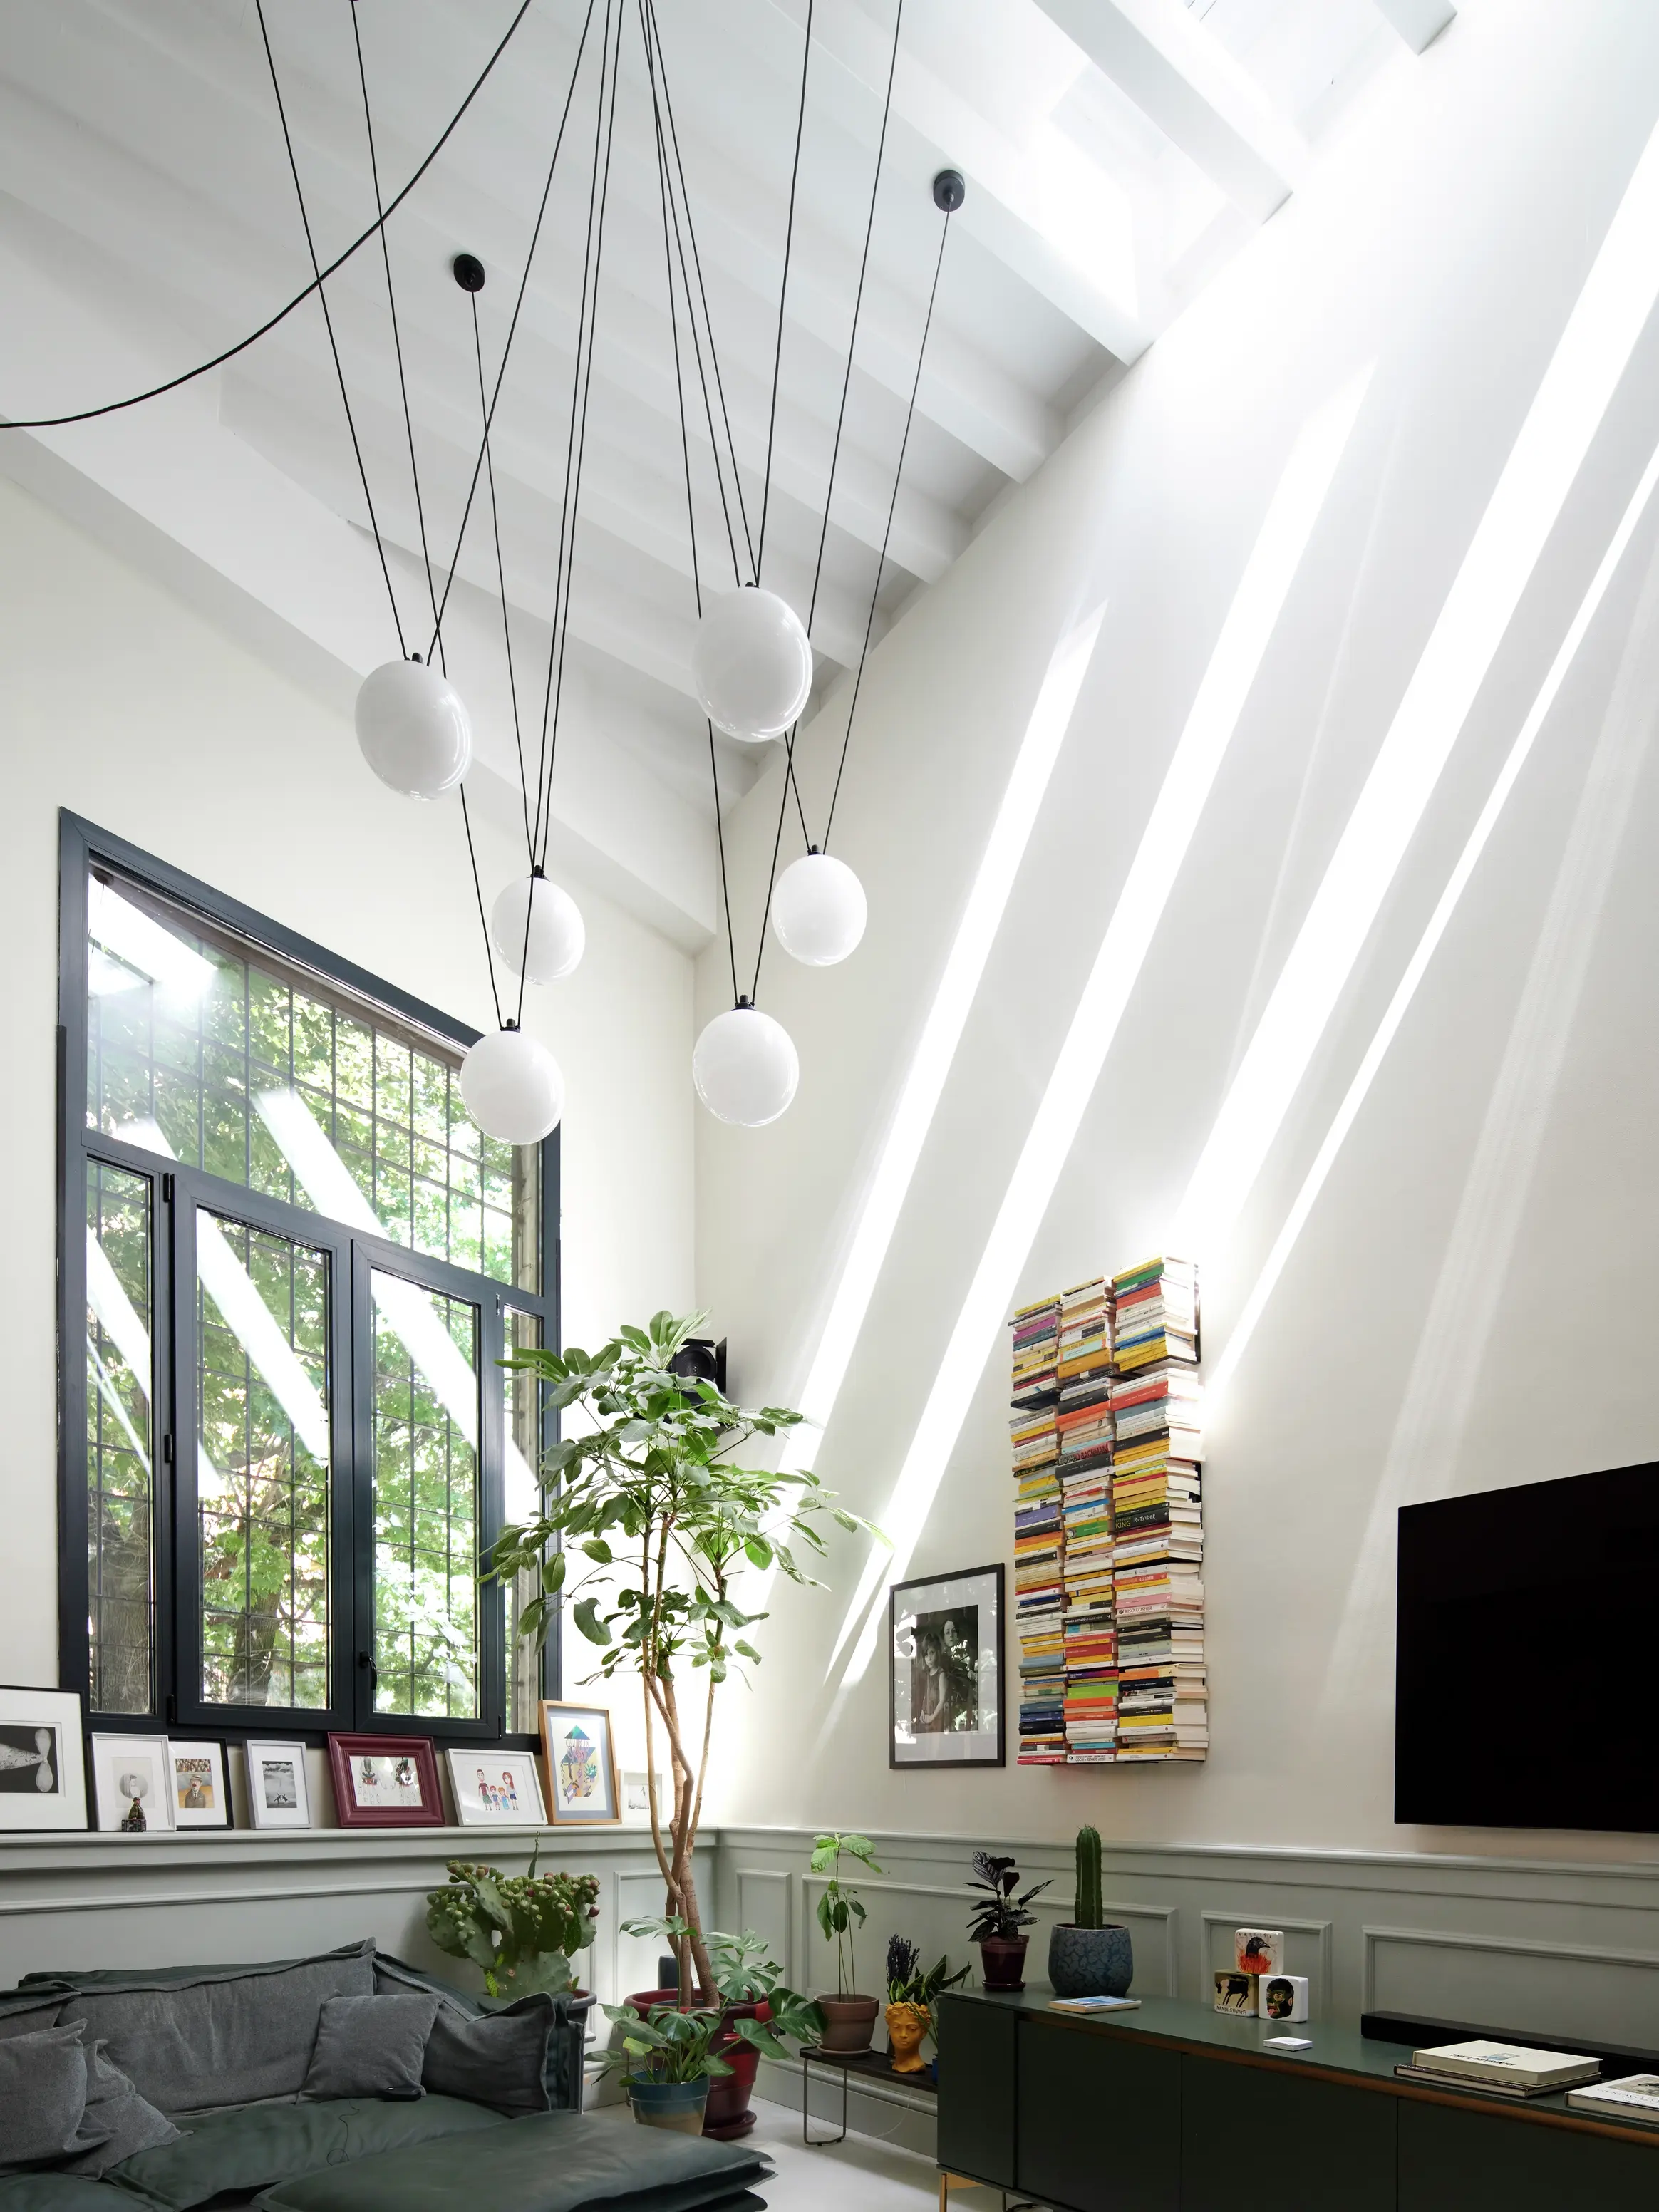 Salon moderne avec des fenêtres de toit VELUX, des suspensions, des plantes et une bibliothèque.